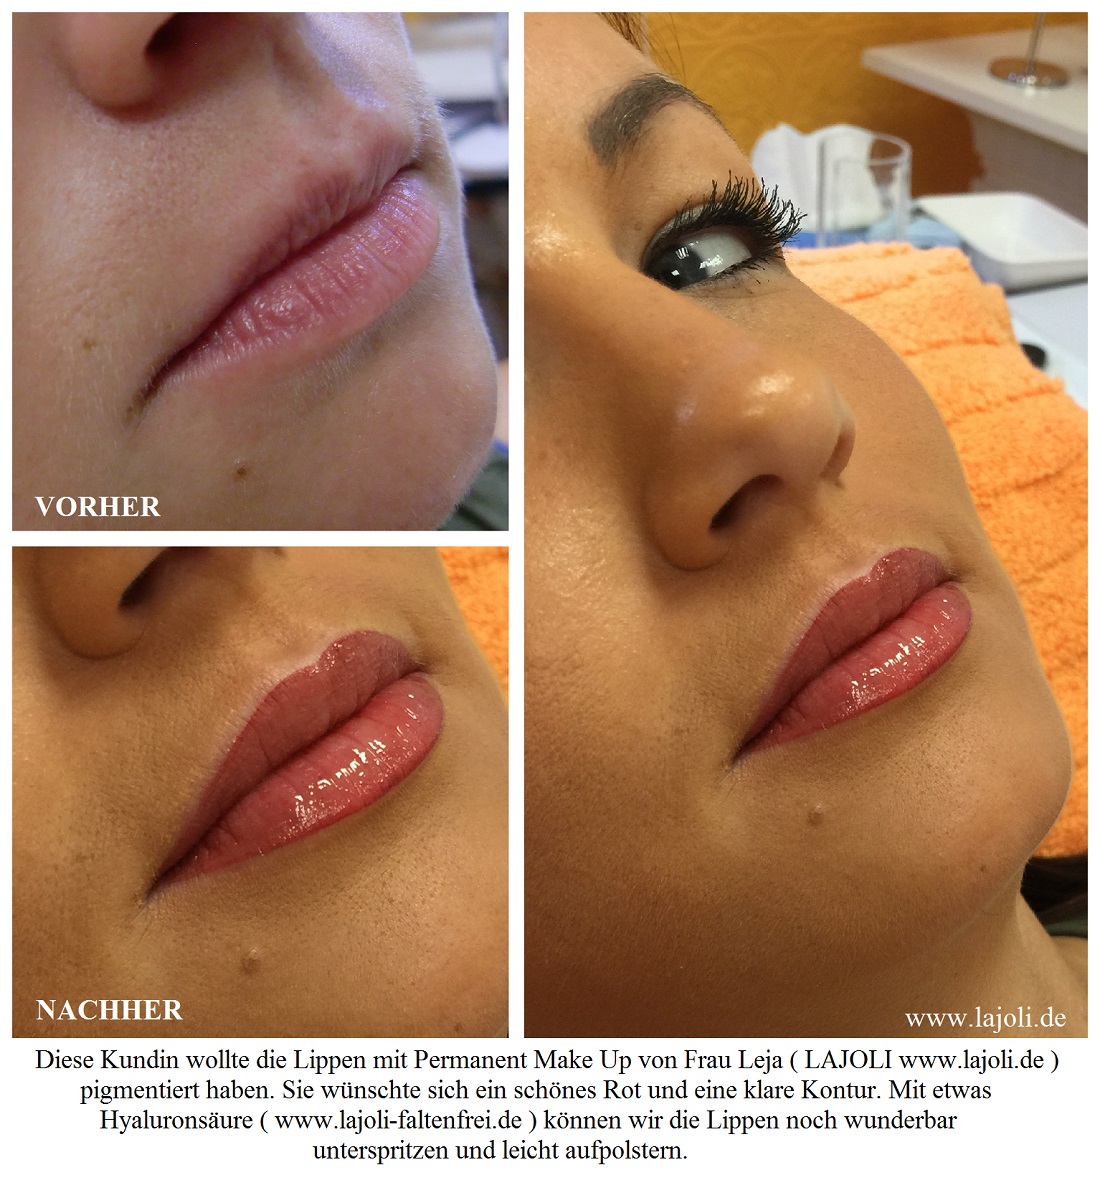 LAJOLI Lippen Permanent Make Up / Kosmetik Hamburg - Lippen aufspritzen - Faltenunterspritzung